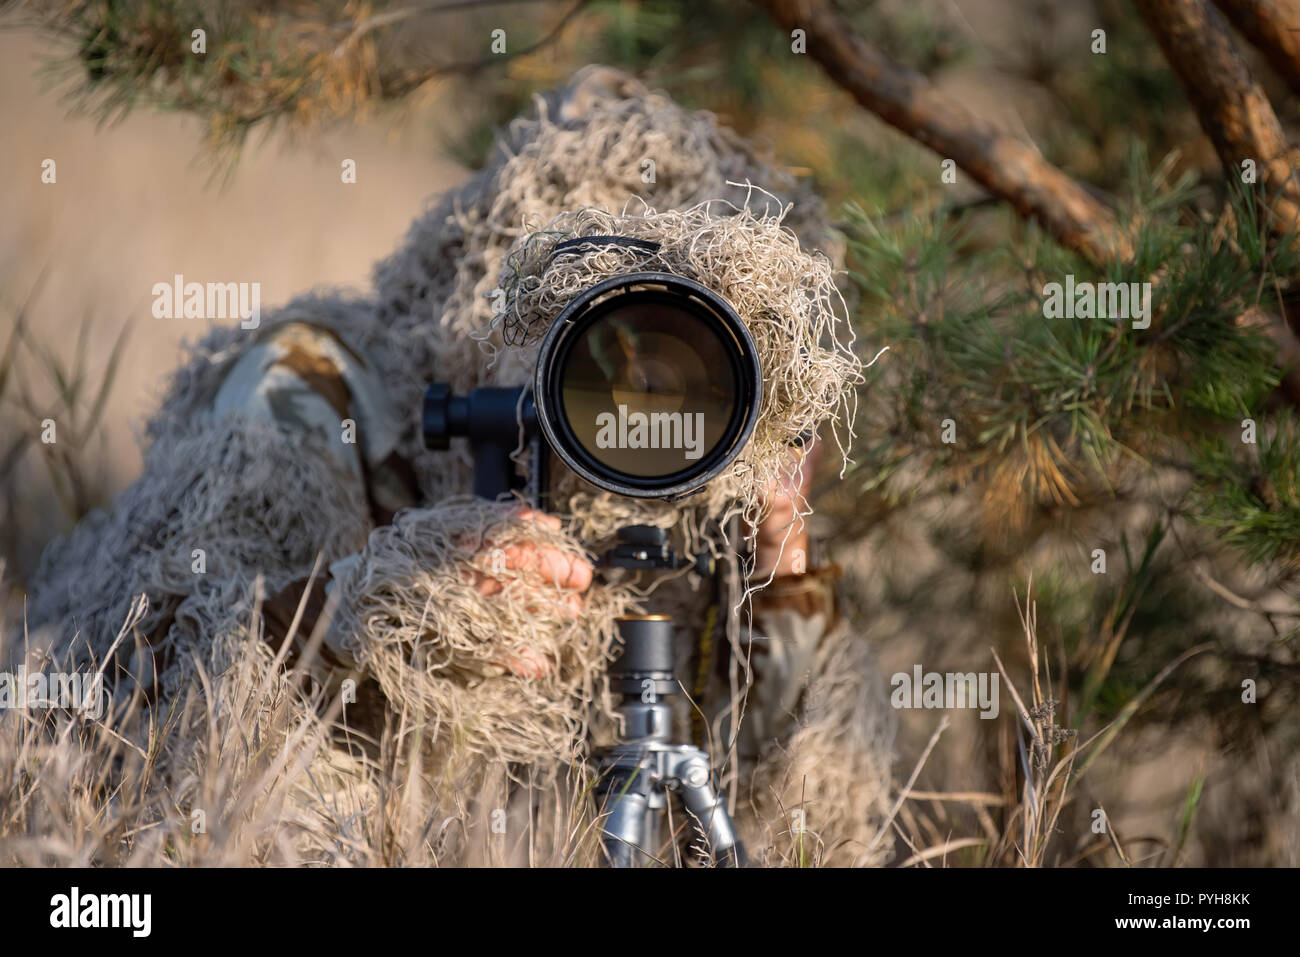 Photographe de la faune dans le camouflage ghillie suit working in the wild Banque D'Images